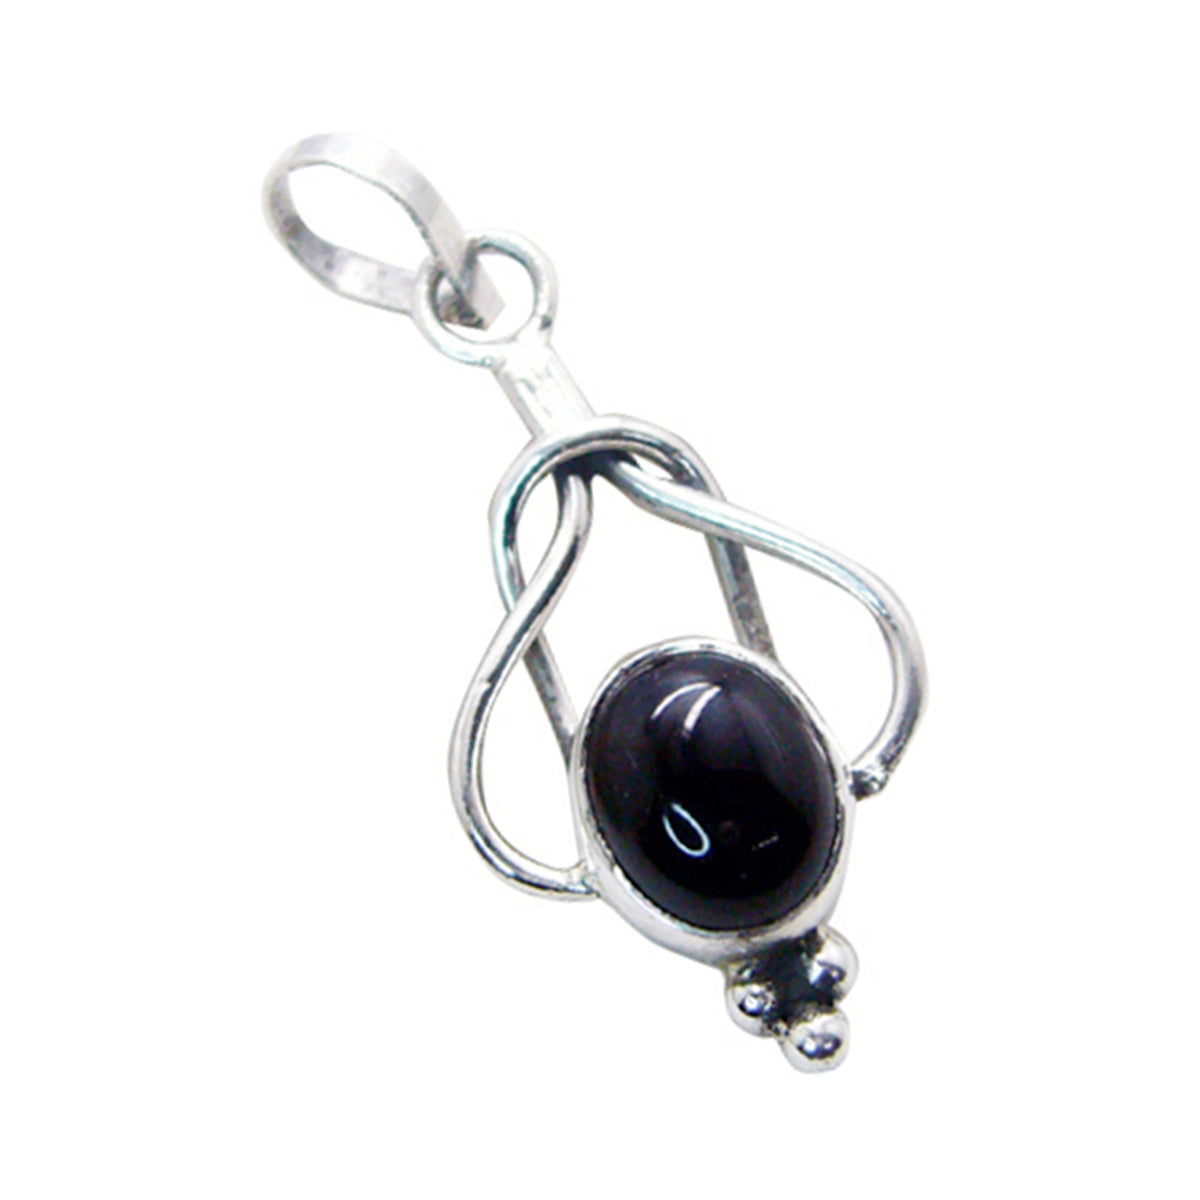 Riyo aantrekkelijke edelsteen ovale cabochon zwart zwart onyx 949 sterling zilveren hanger cadeau voor verjaardag